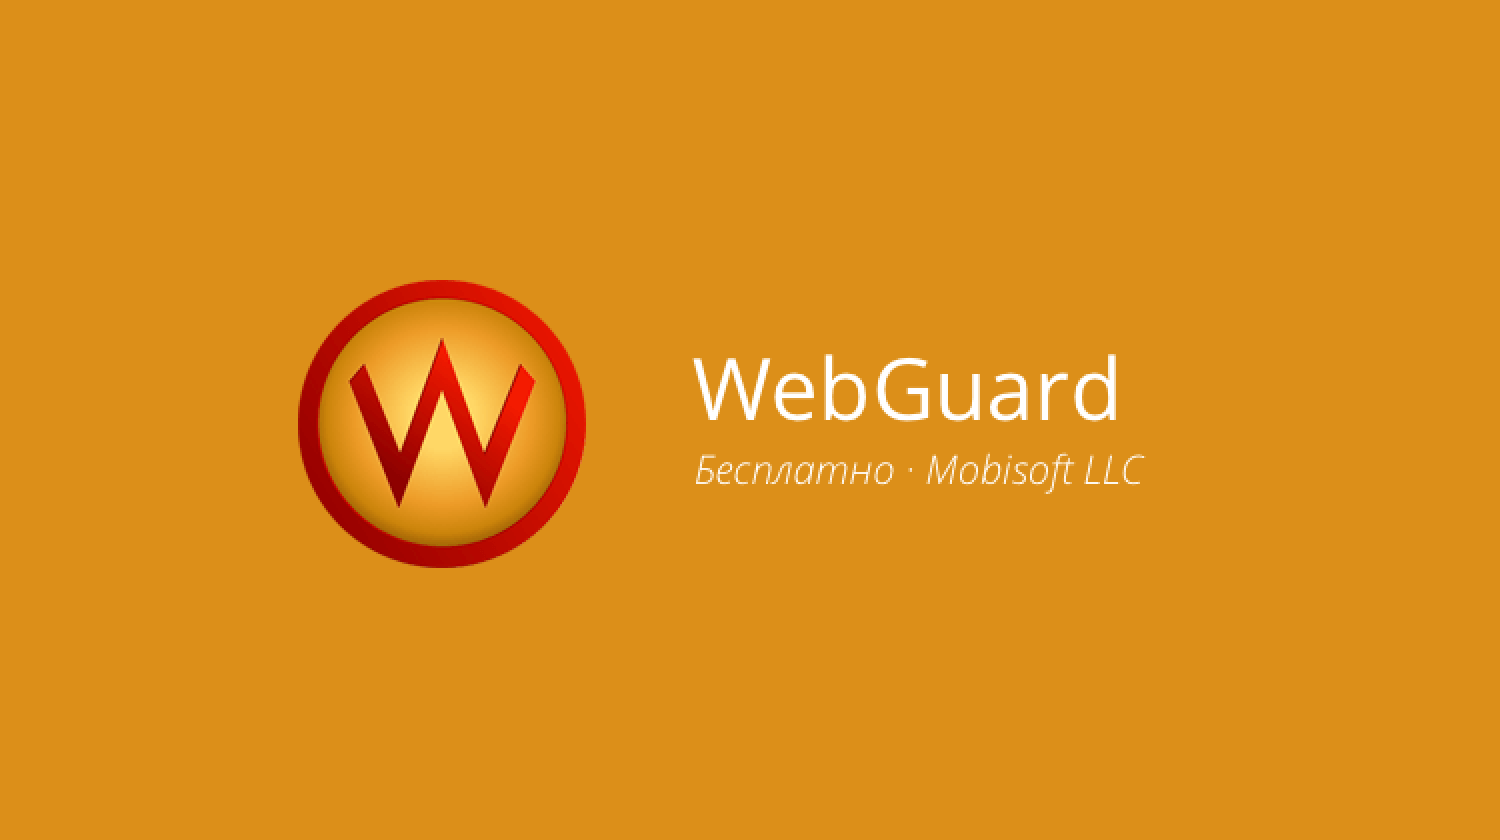 WebGuard